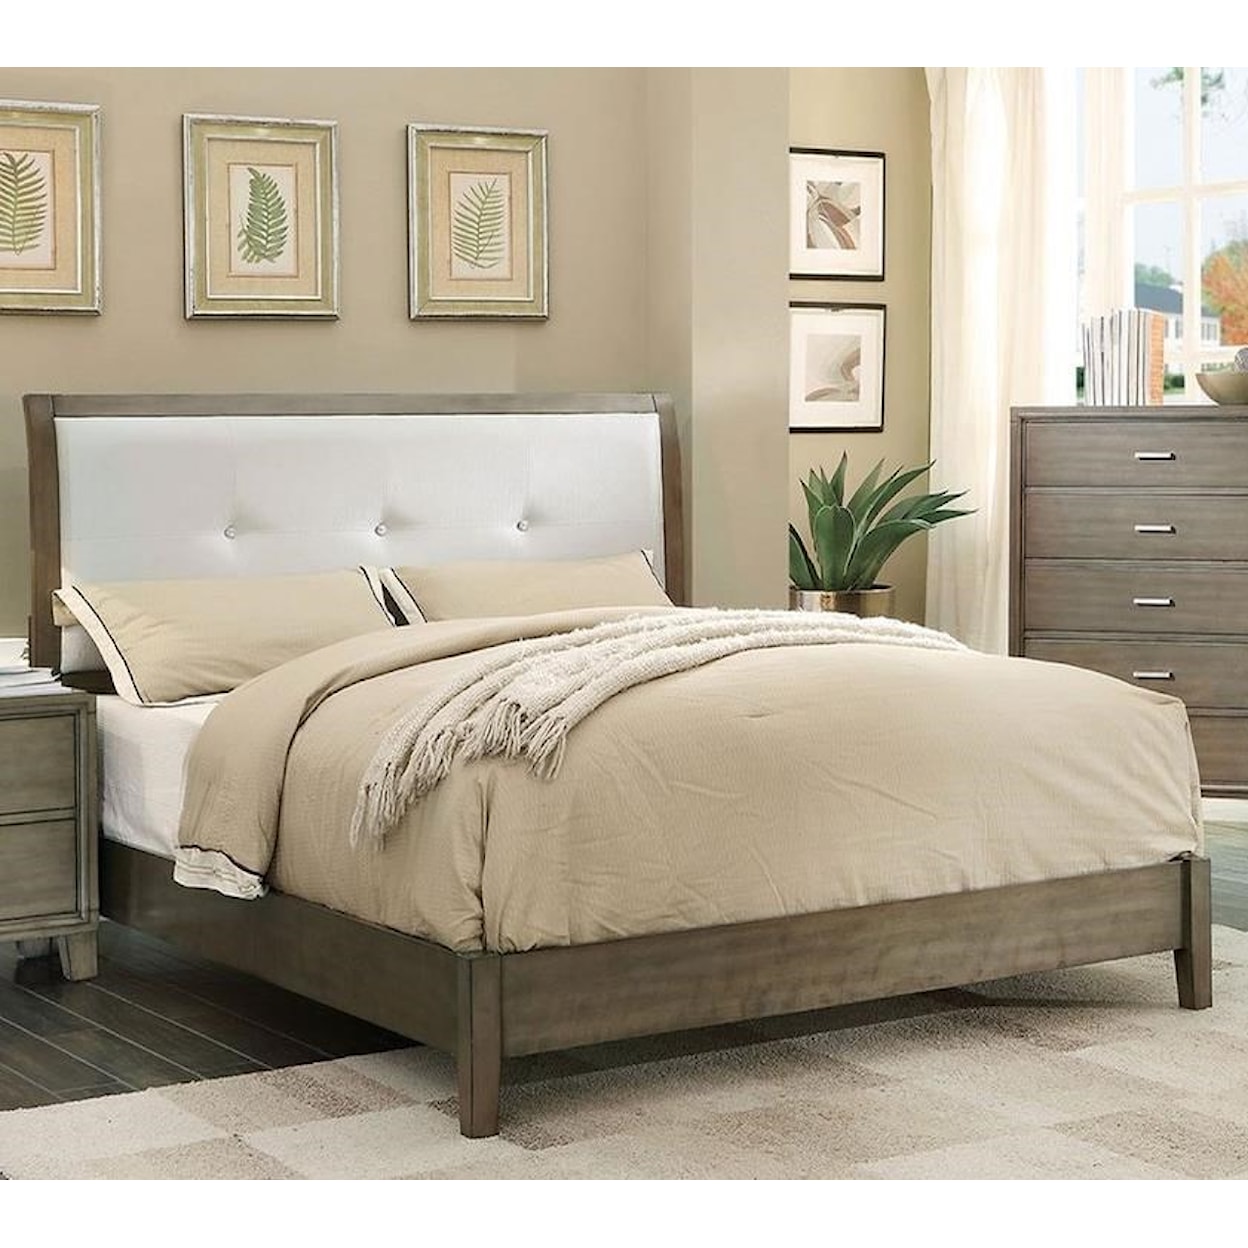 FUSA Enrico King Upholstered Bed